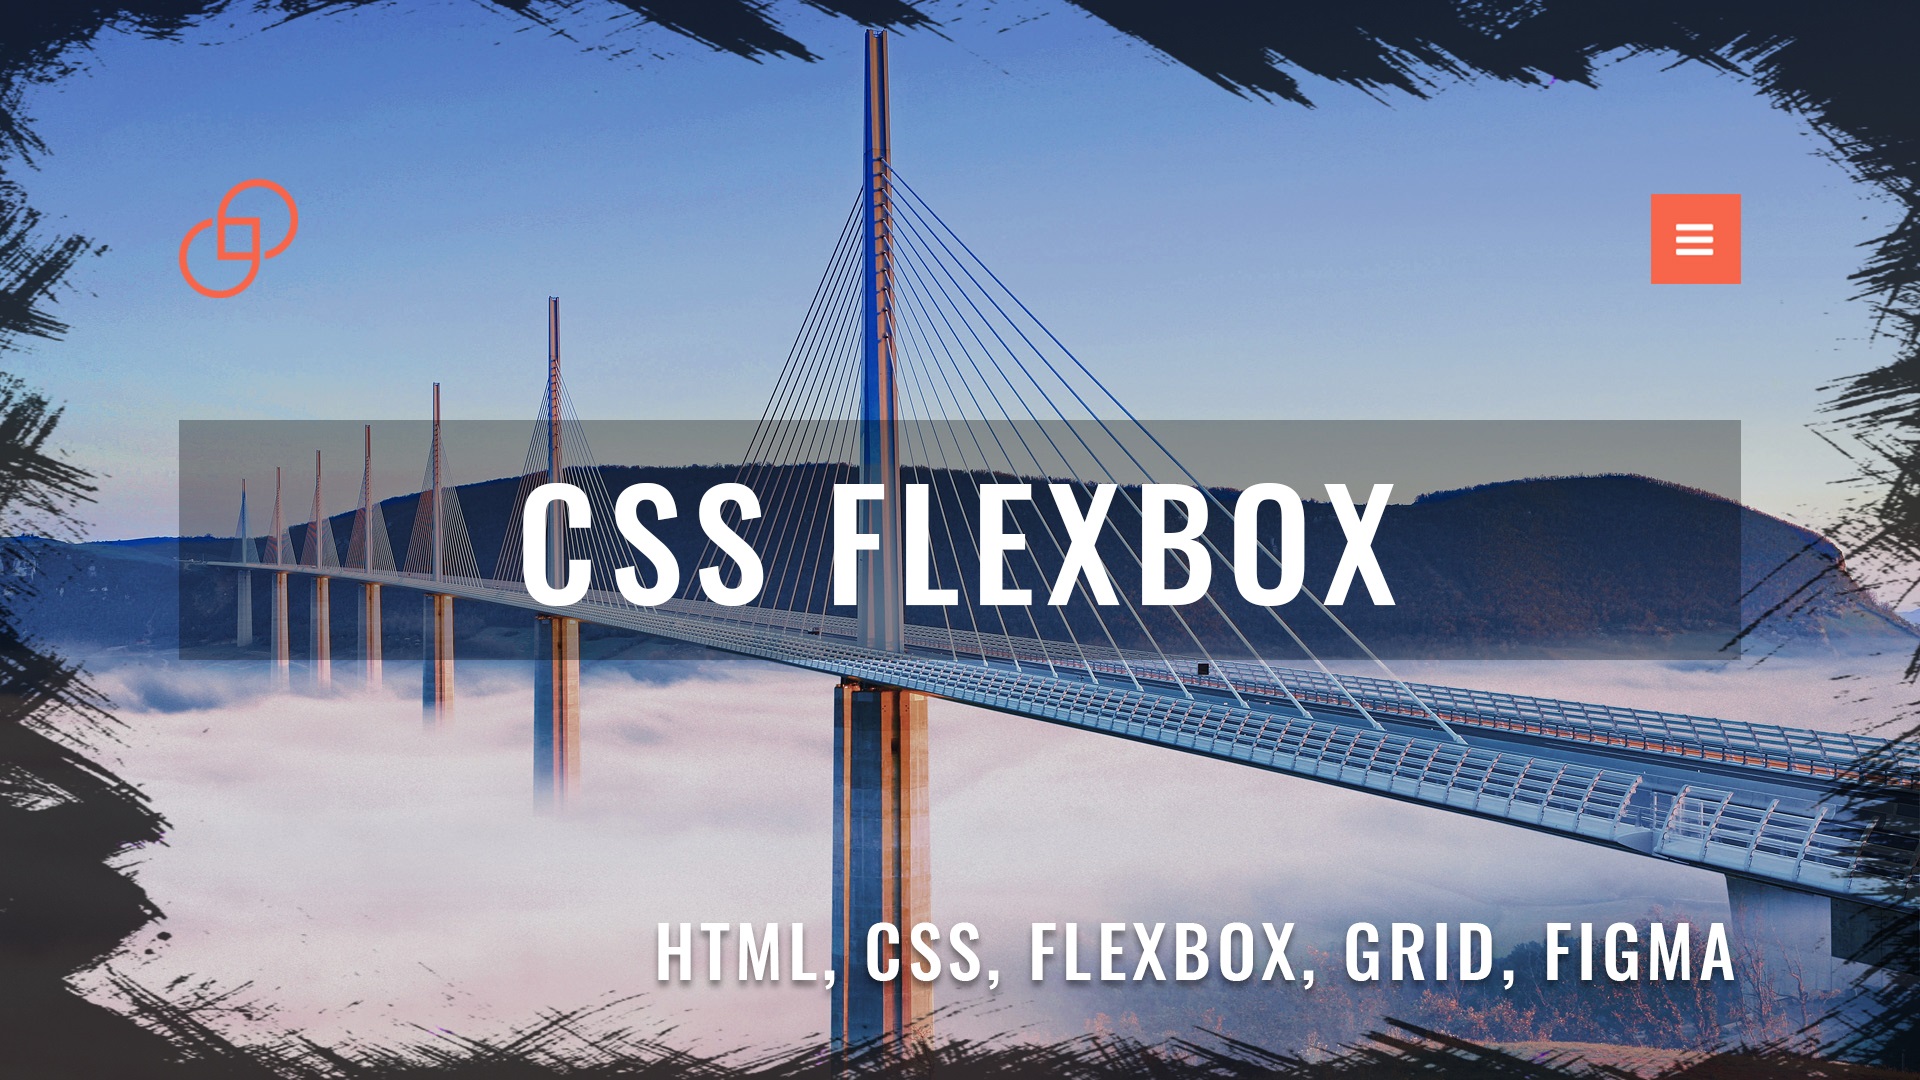 Адаптивная верстка сайта с нуля по макету из Figma #5 CSS Flexbox